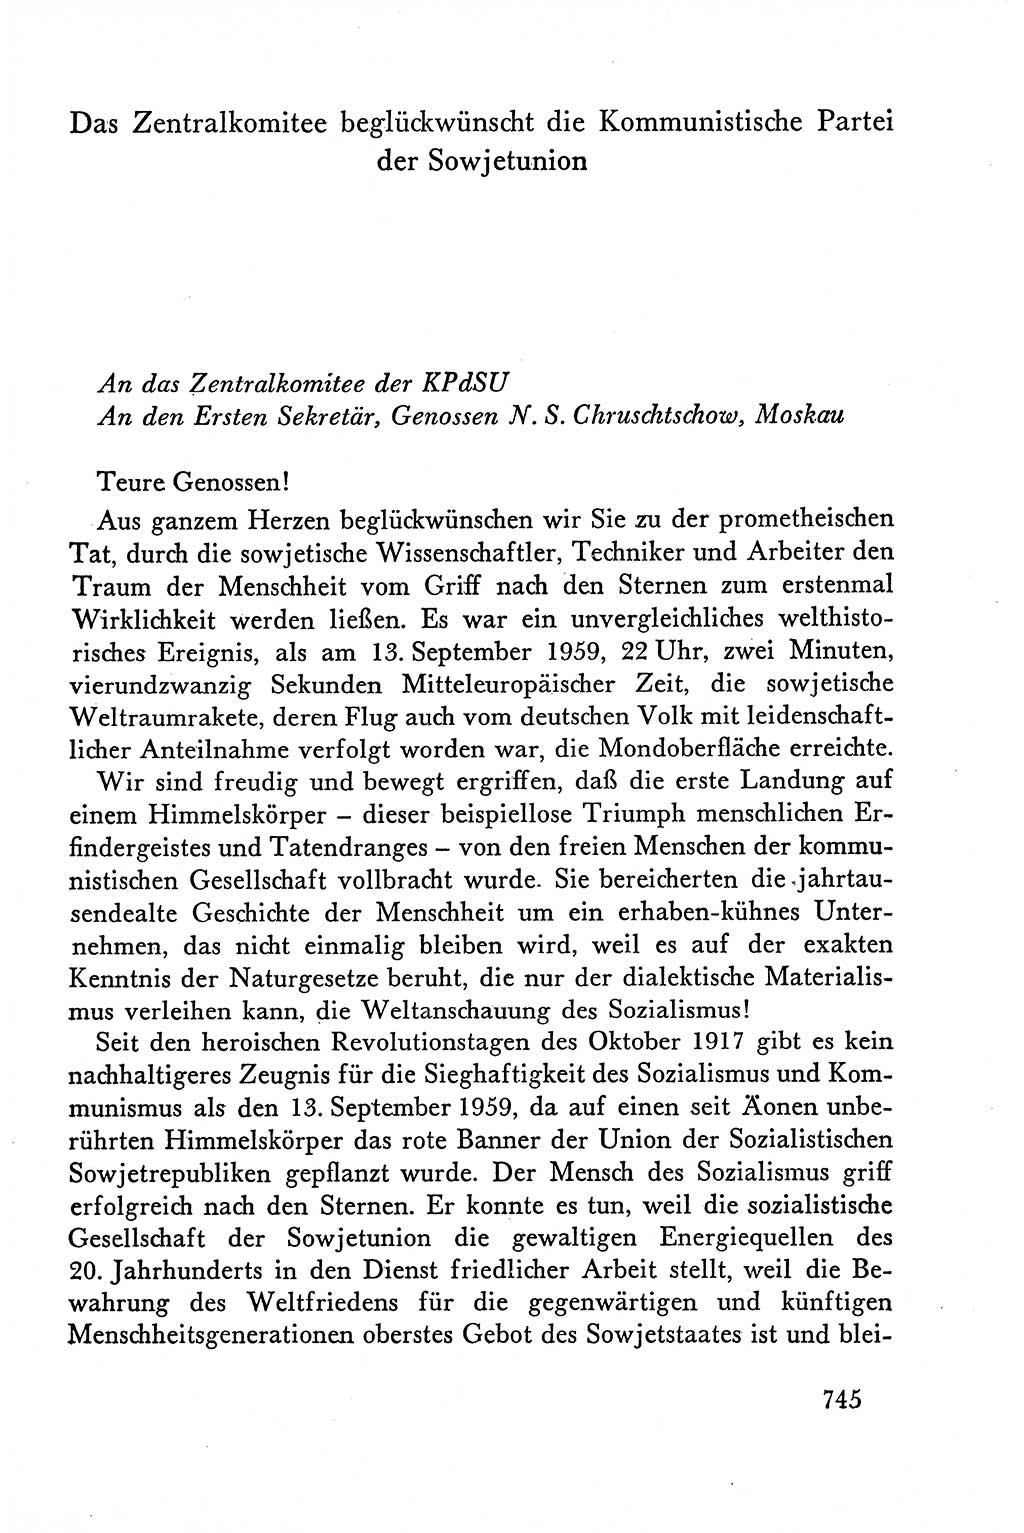 Dokumente der Sozialistischen Einheitspartei Deutschlands (SED) [Deutsche Demokratische Republik (DDR)] 1958-1959, Seite 745 (Dok. SED DDR 1958-1959, S. 745)